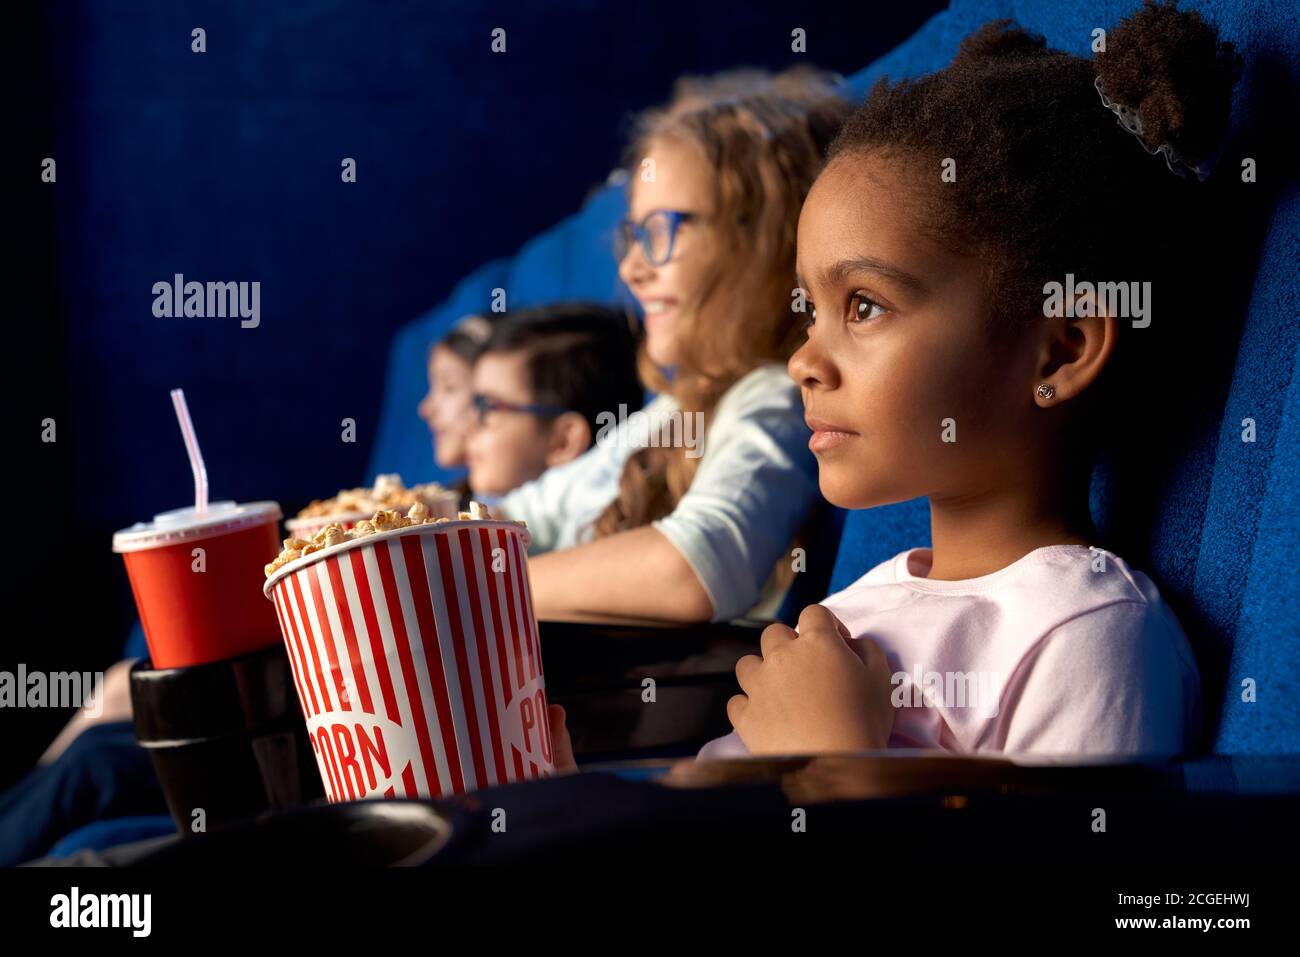 Belle fille africaine concentrée avec coiffure drôle regarder le film dans le cinéma. Adorable petite fille assise entre amis, mangeant du pop-corn et souriant. Concept de divertissement, de loisirs. Banque D'Images